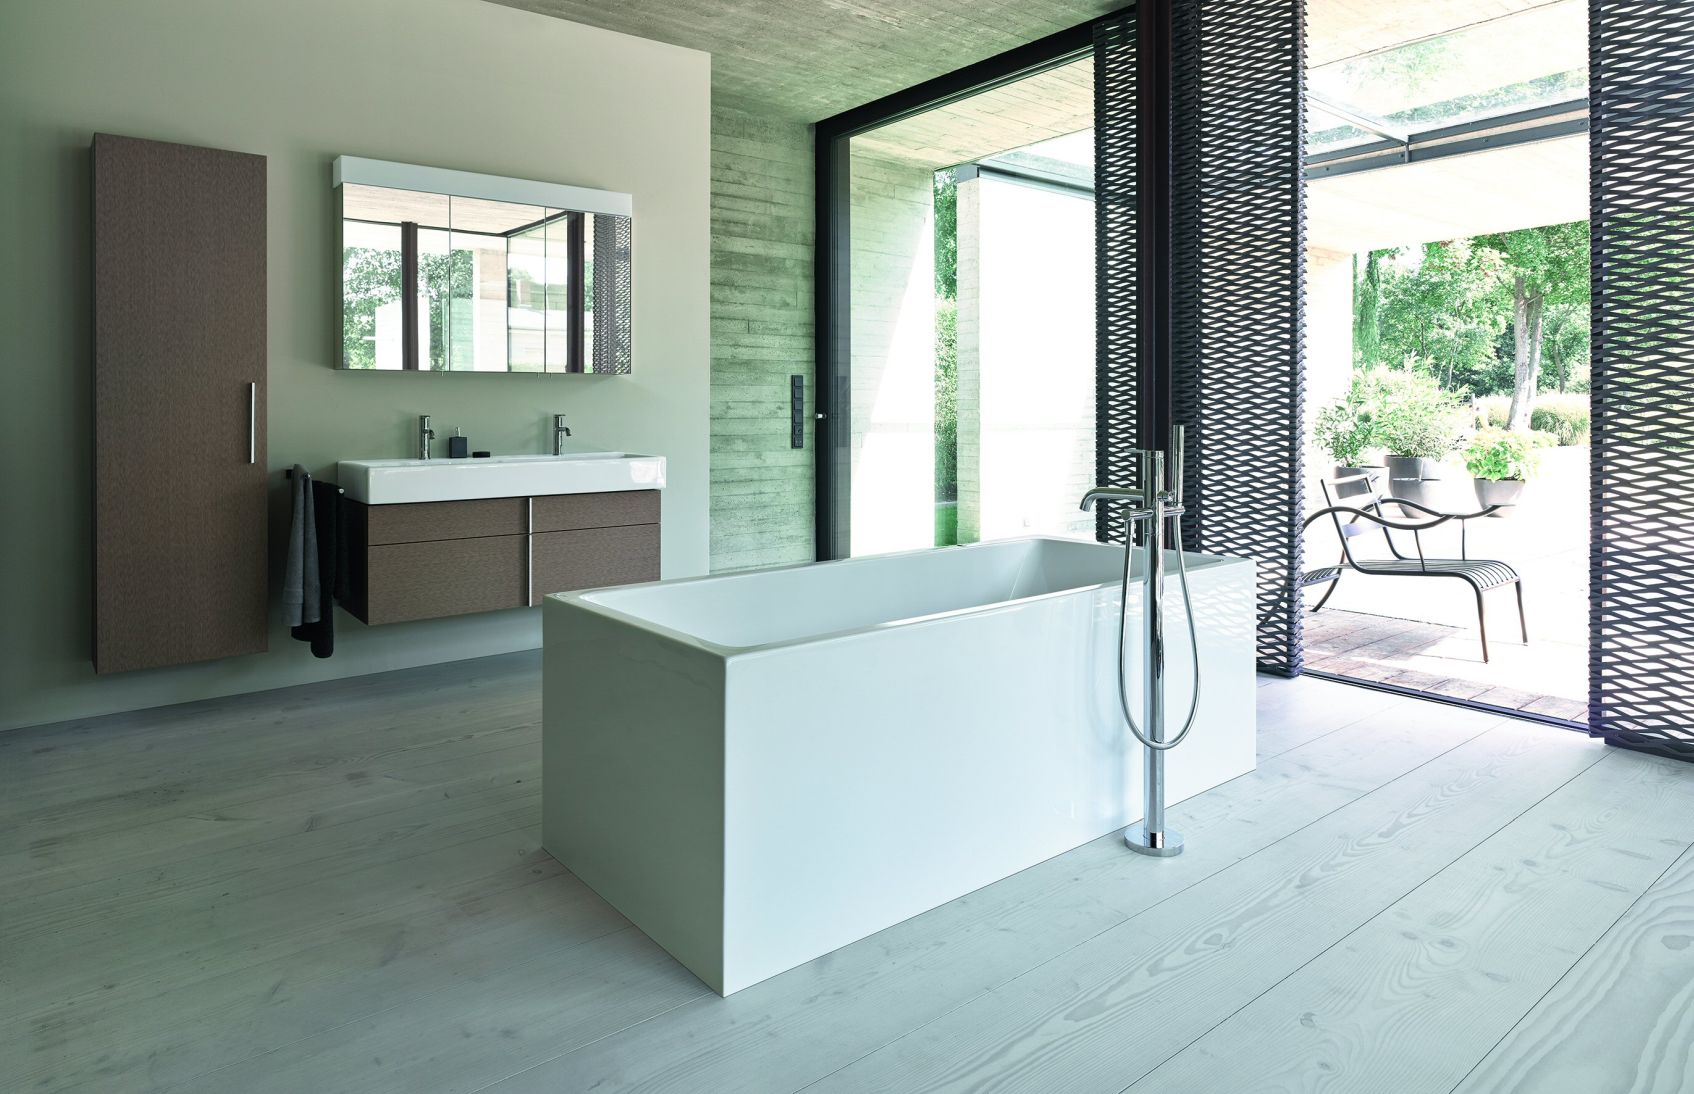 Łazienka w drewnie. Łazienka biało-drewniana, szara łazienka z drewnem czy łazienka drewno beton? Aranżacje, inspiracje!